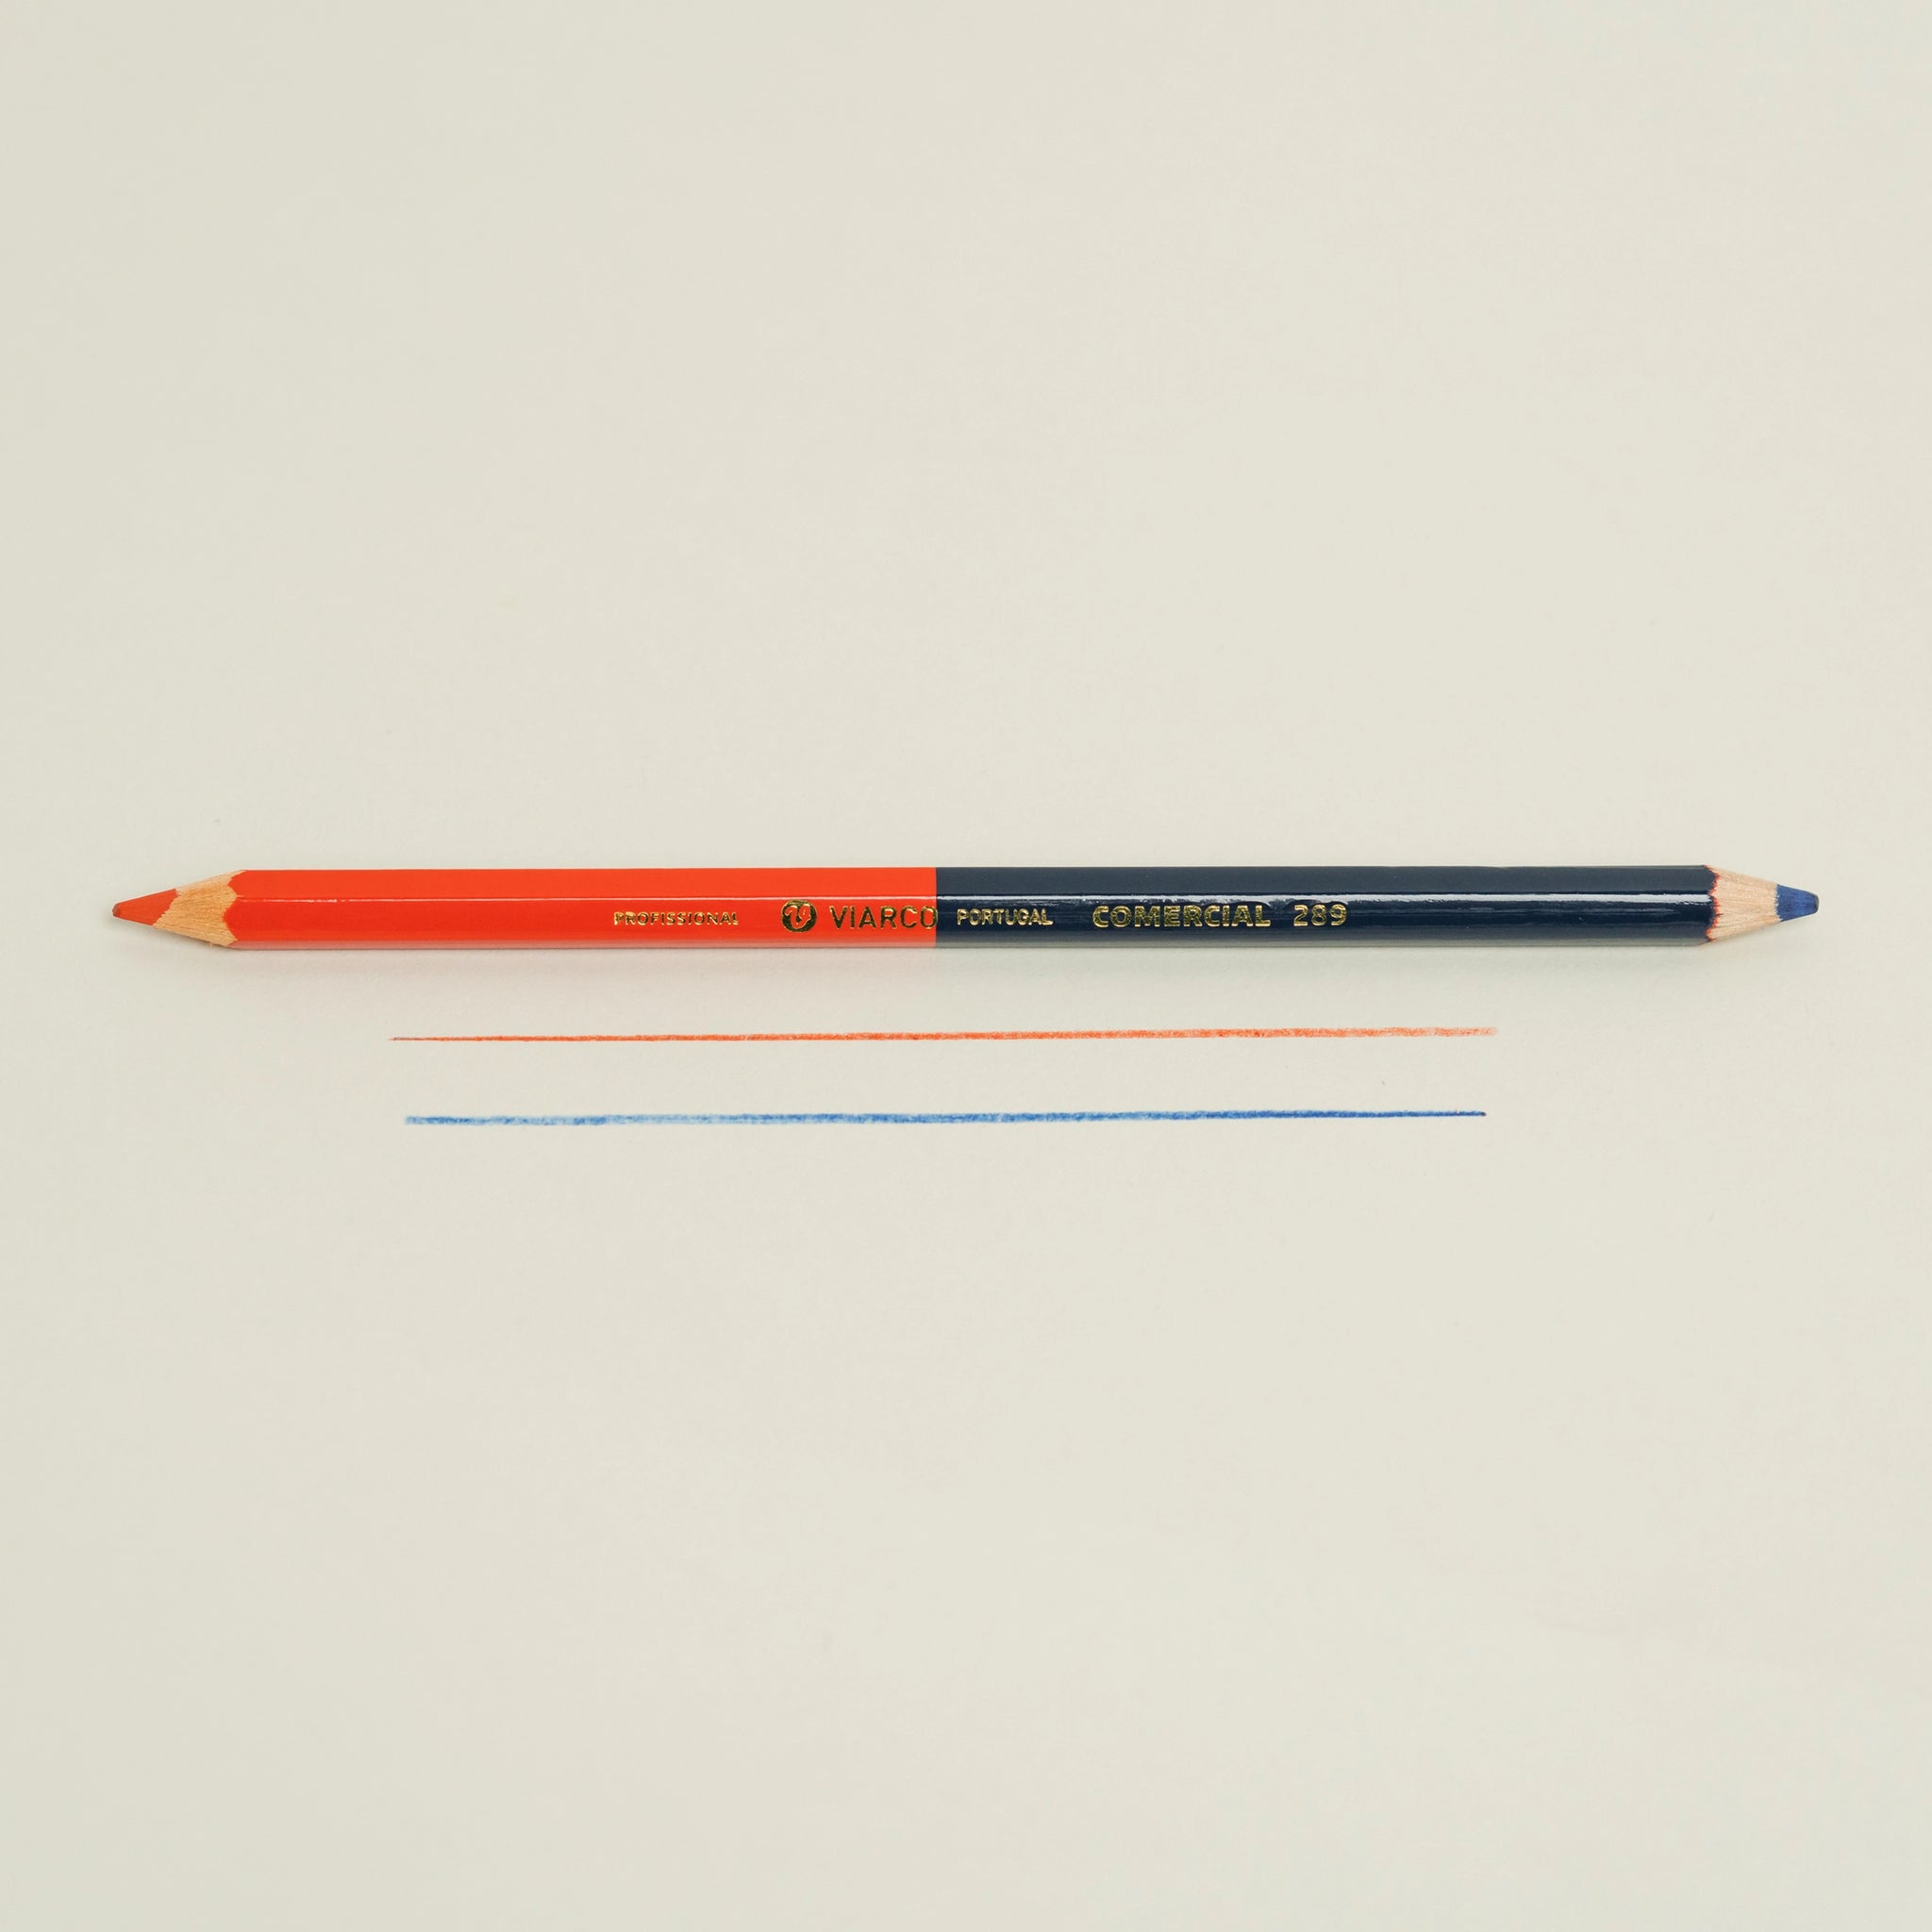 Viarco Bicolor Pencil